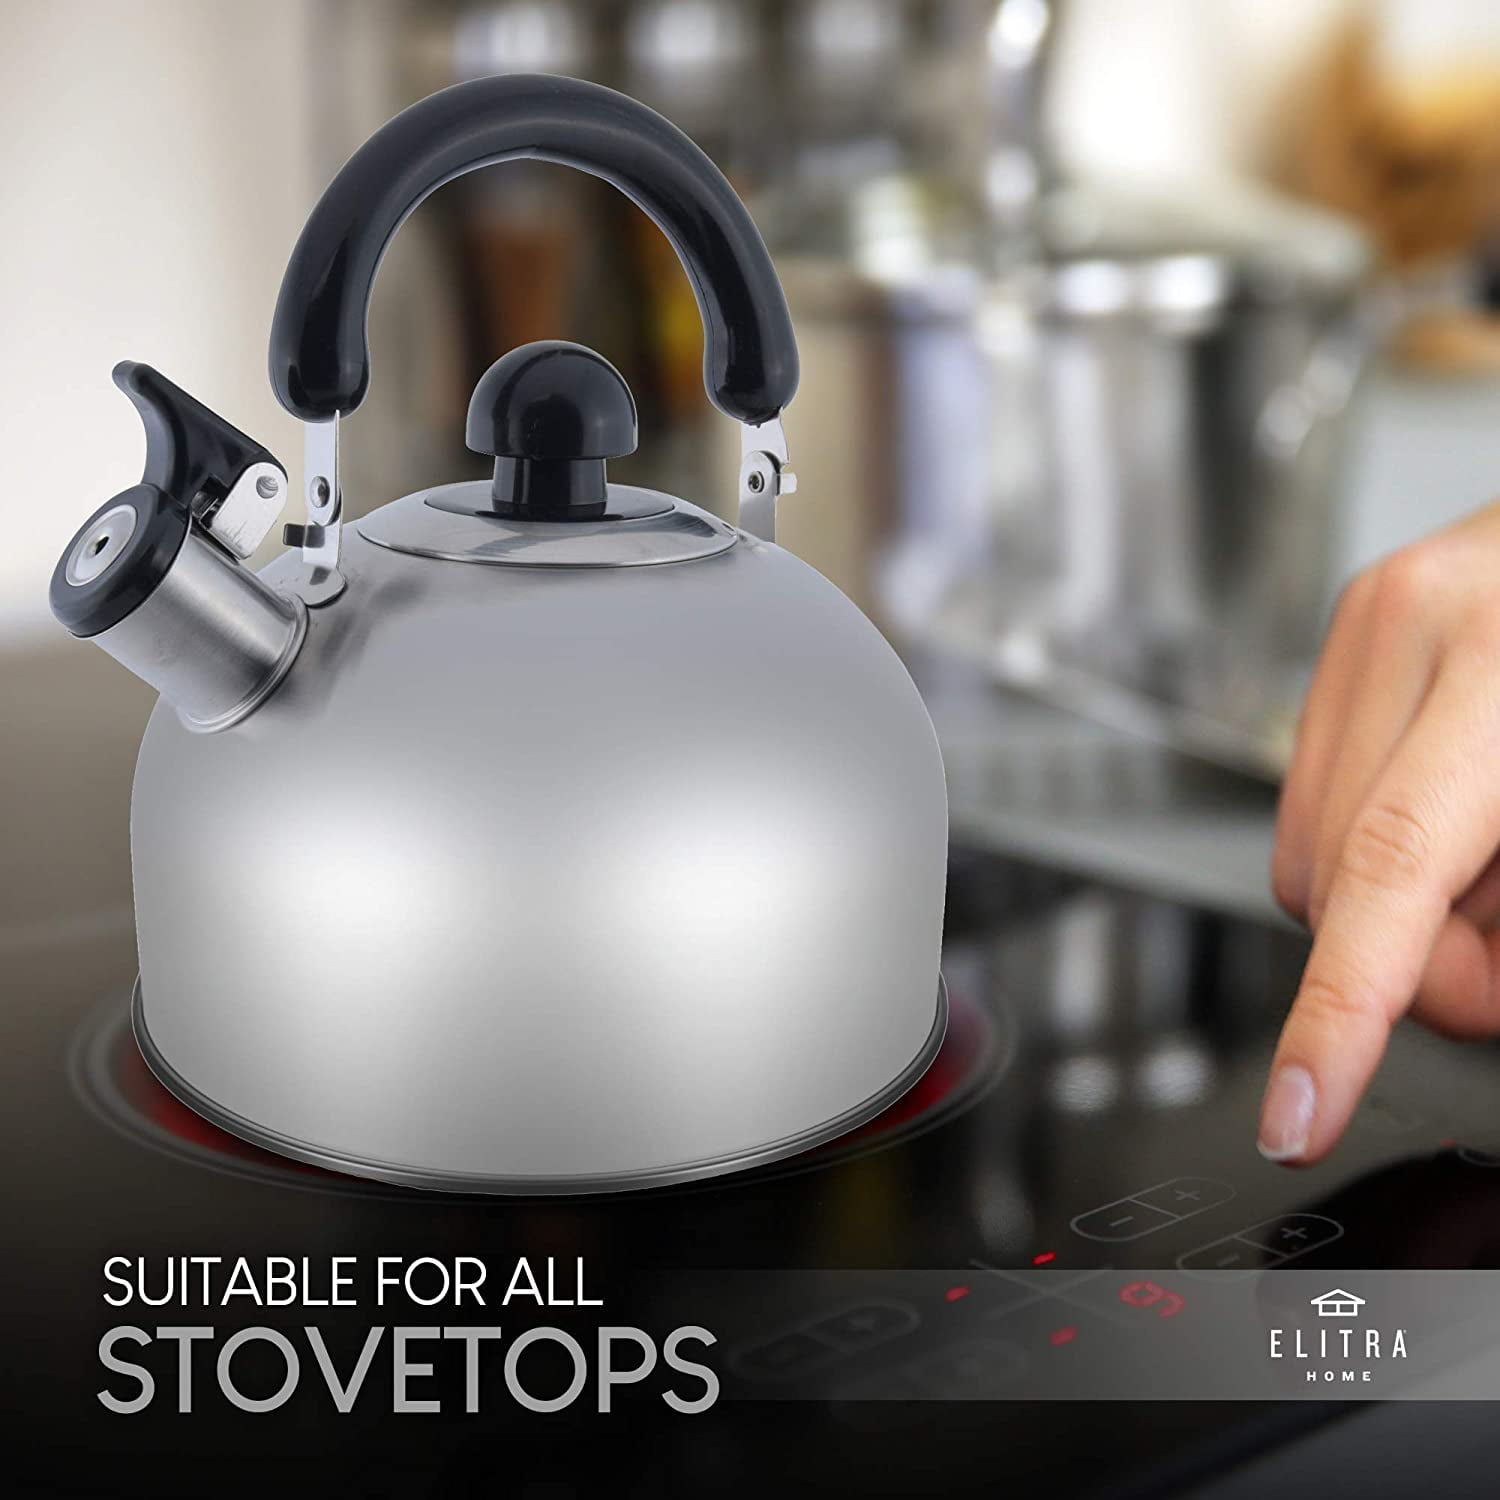 Riwendell Stainless Steel Whistling Tea Kettle 2.6-Quart StoveTop Kettle Teapot 